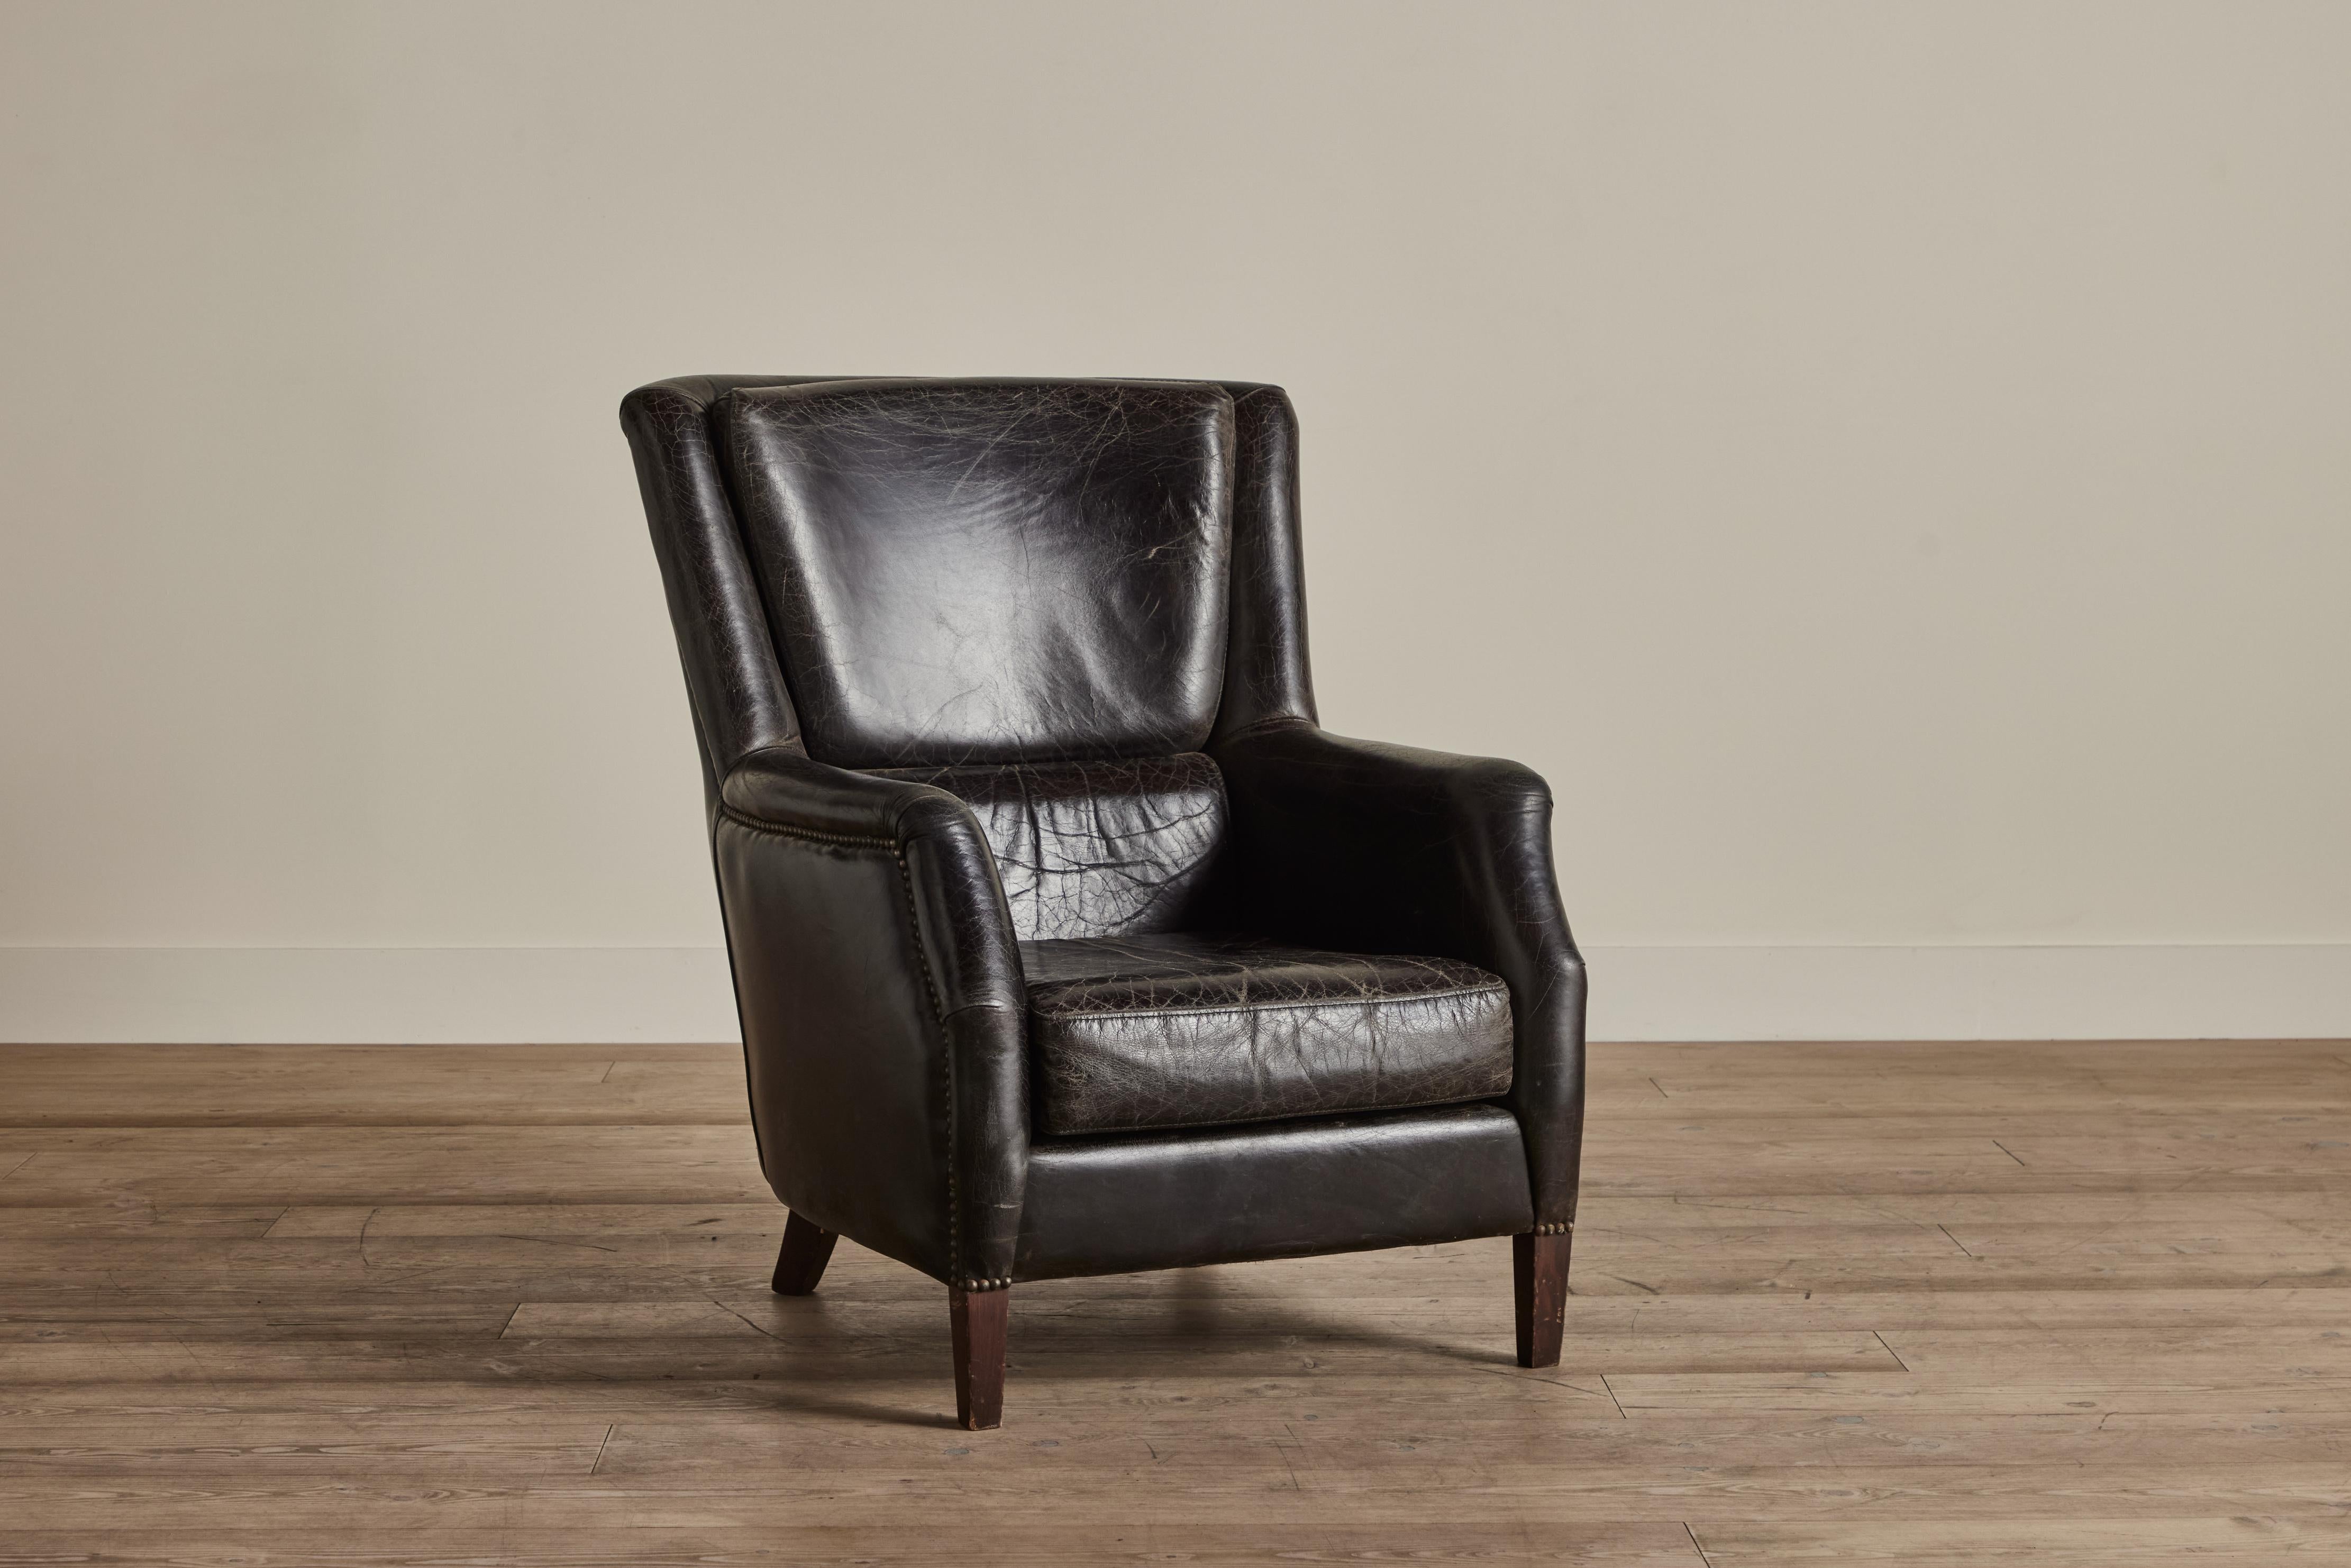 Schwarzer Lederstuhl mit hoher Rückenlehne aus den 1960er Jahren aus Dänemark. Einige Abnutzungserscheinungen auf dem Leder, die mit dem Alter und dem Gebrauch vereinbar sind. 